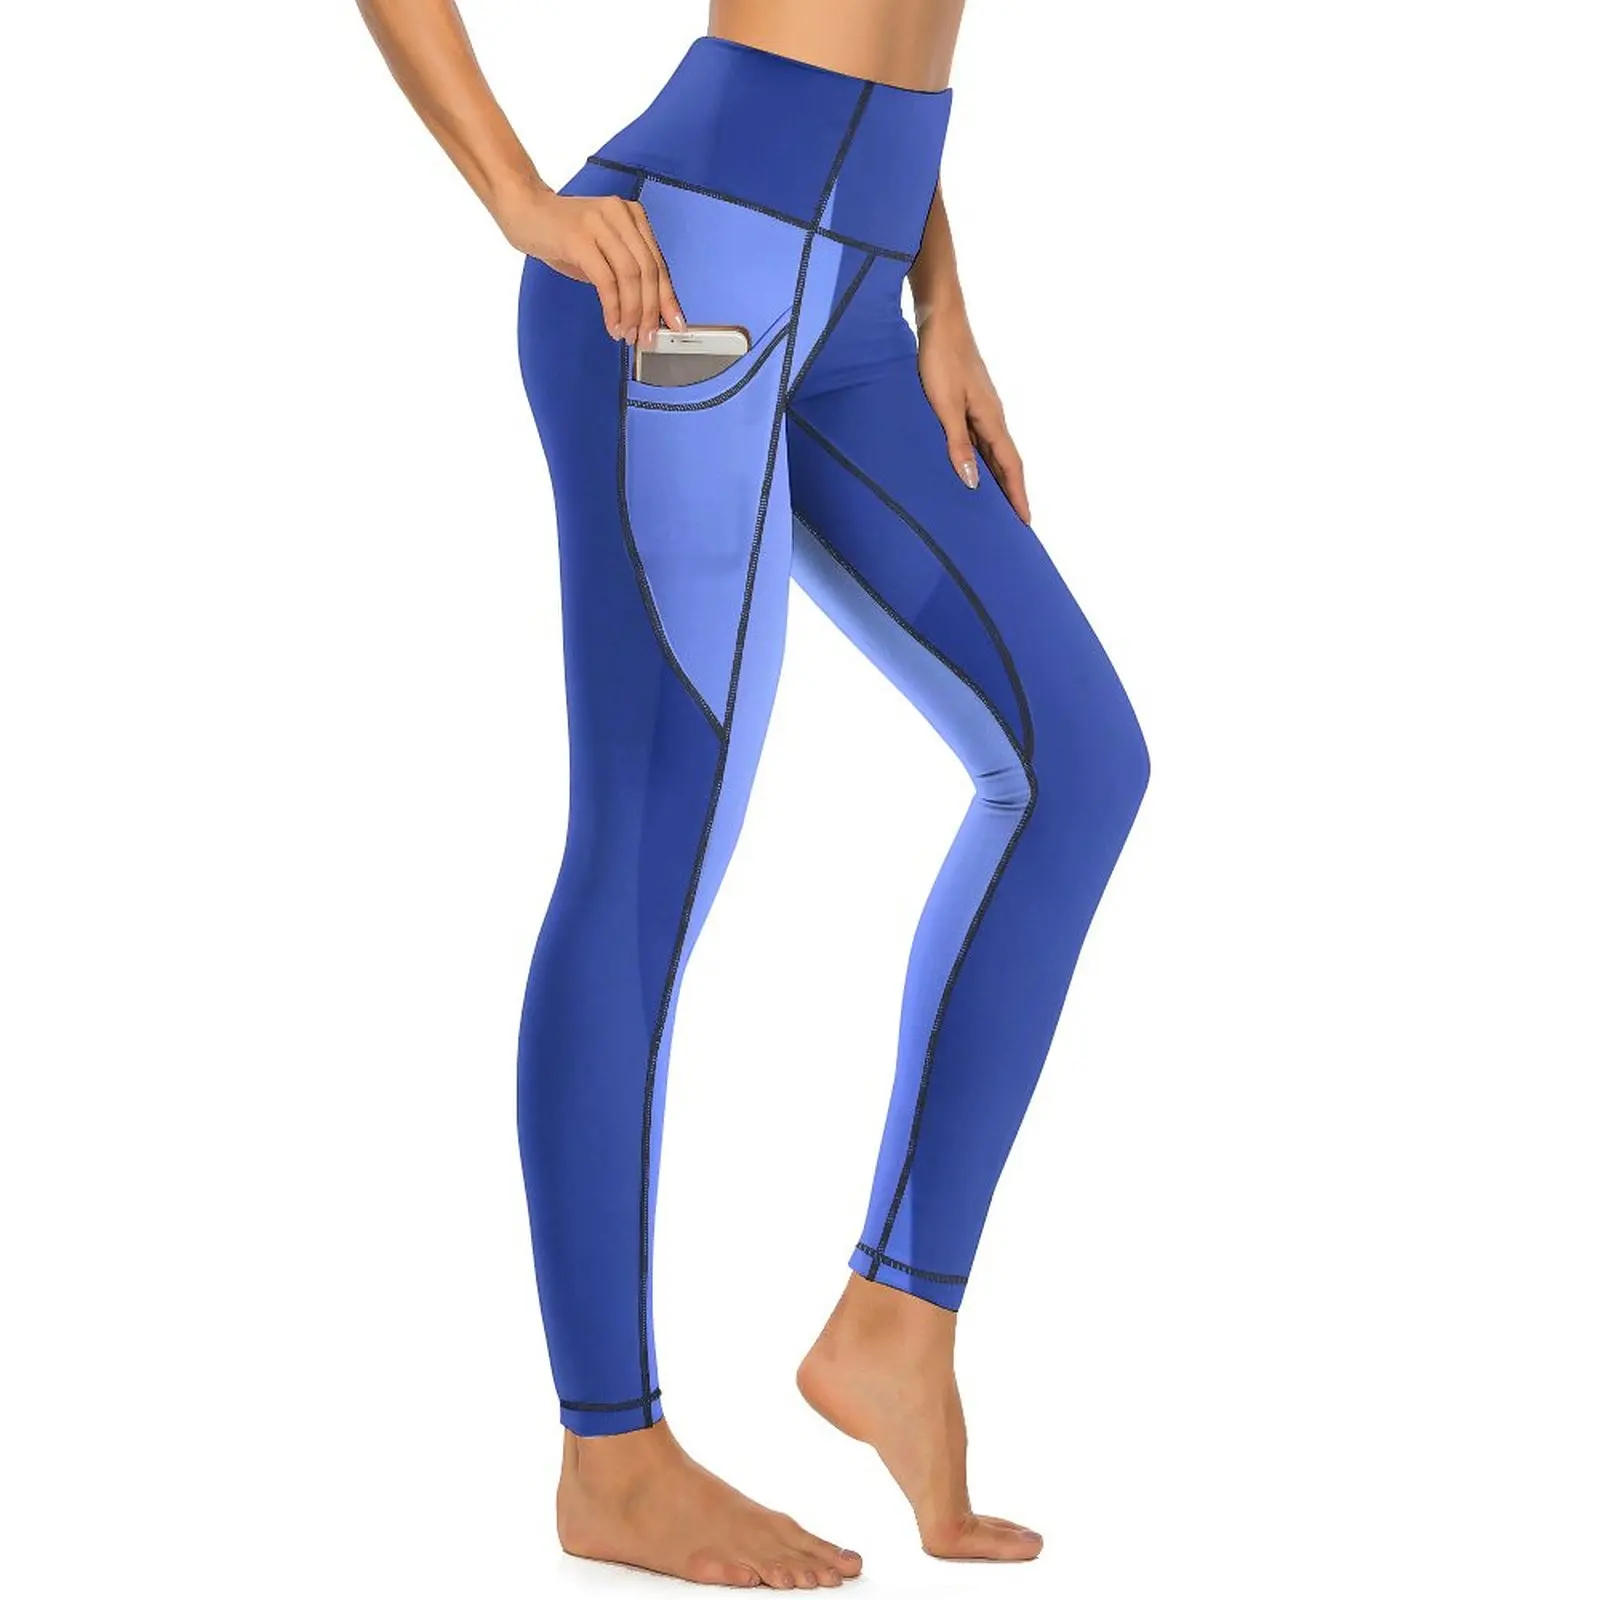 

Двухцветные штаны для йоги Ocean, женские синие текстурные леггинсы с высокой талией, эстетические спортивные колготки для йоги, эластичные леггинсы для работы с графикой